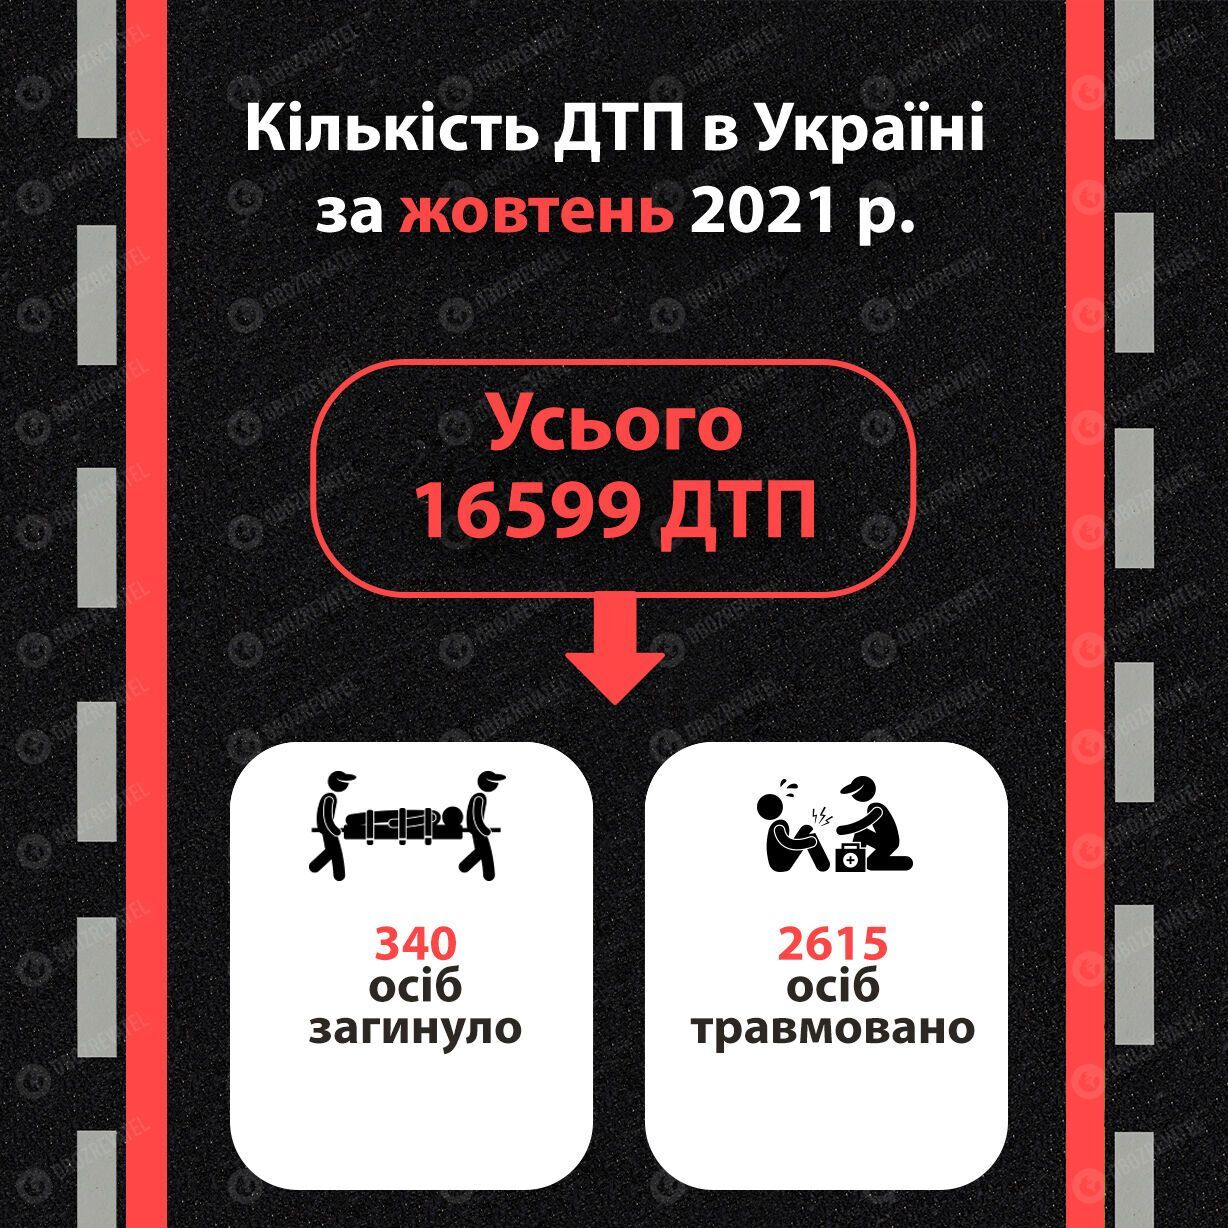 Статистика ДТП в Украине в октябре 2021 года